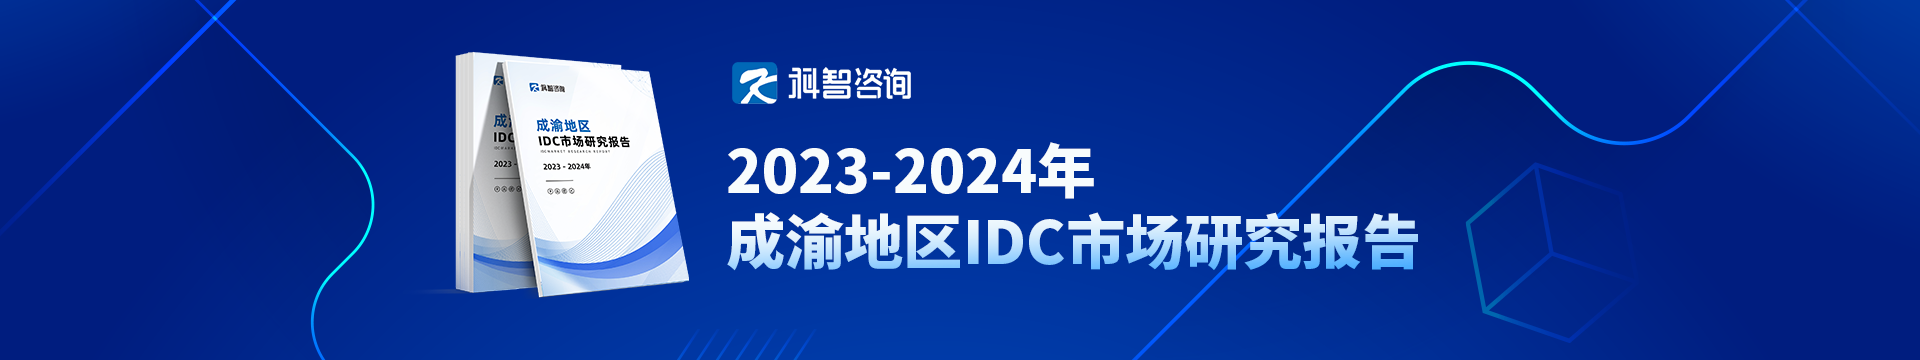 2023-2024年成渝地区IDC市场研究报告